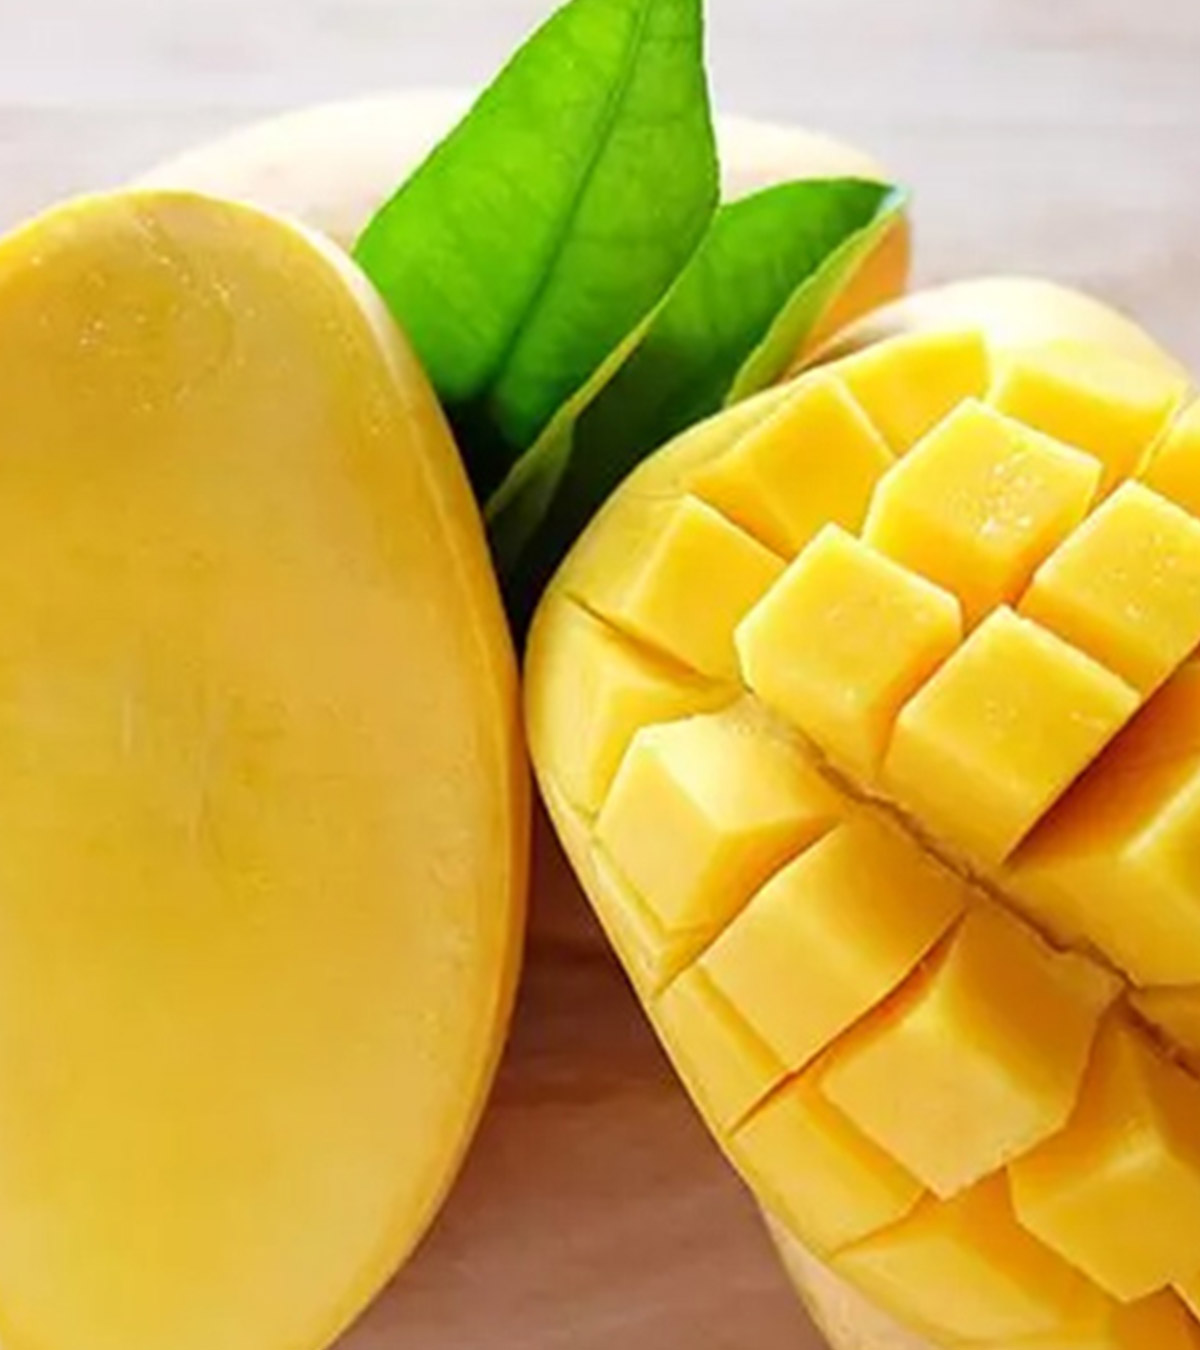 गर्भावस्था में आम (Mango) खाना चाहिए या नहीं? | Pregnancy Mein Aam Khana Chahiye Ya Nahi